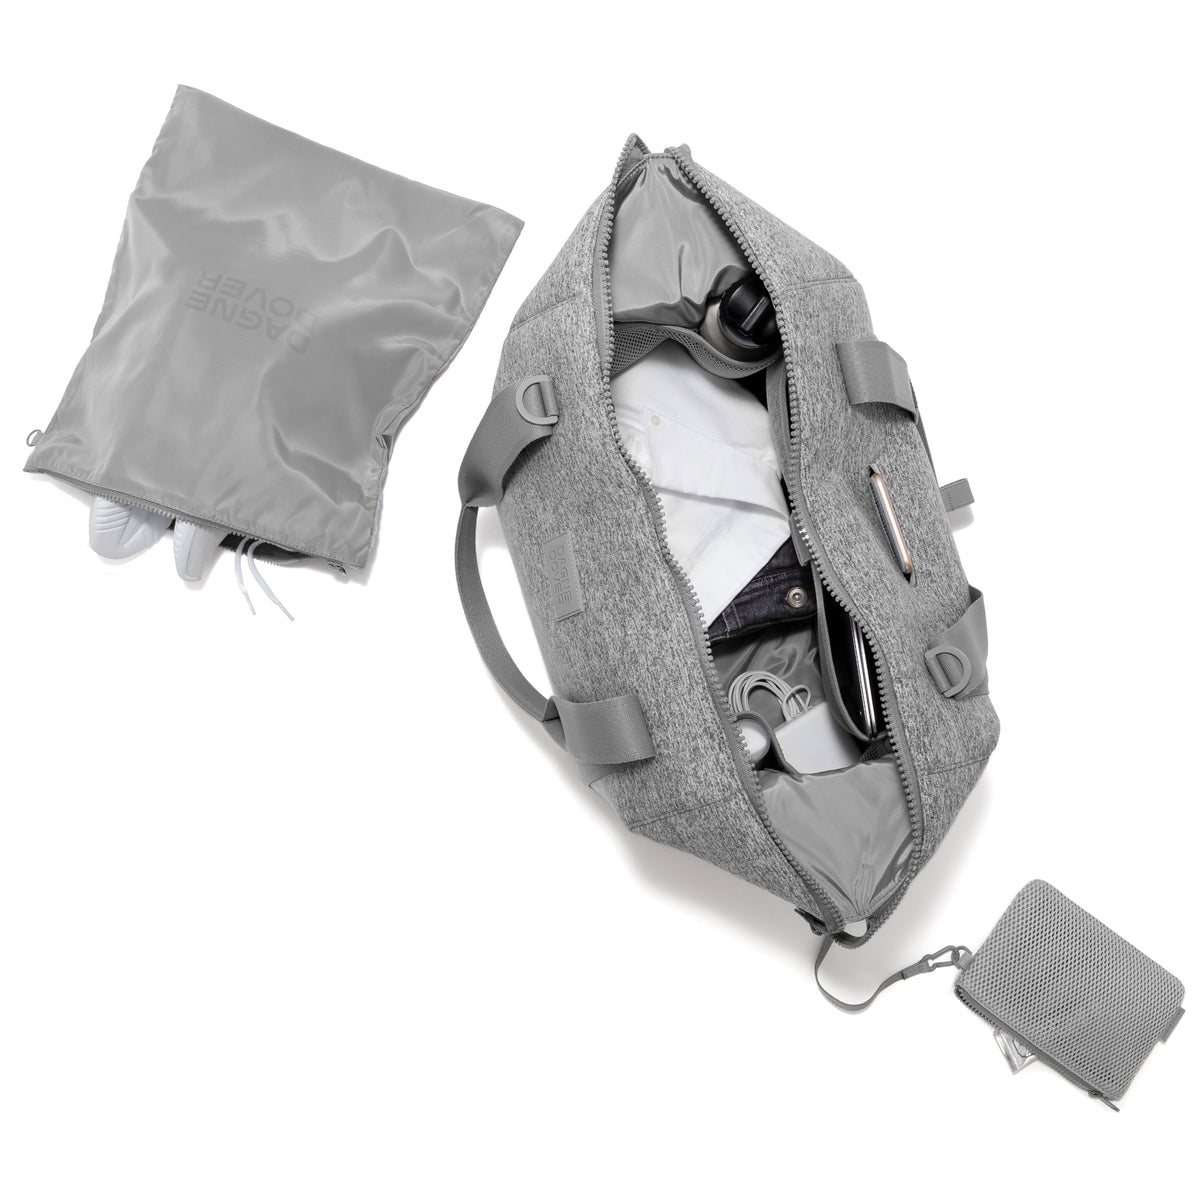 Luggage & Weekenders  Landon Medium Carryall Bag Dark Moss